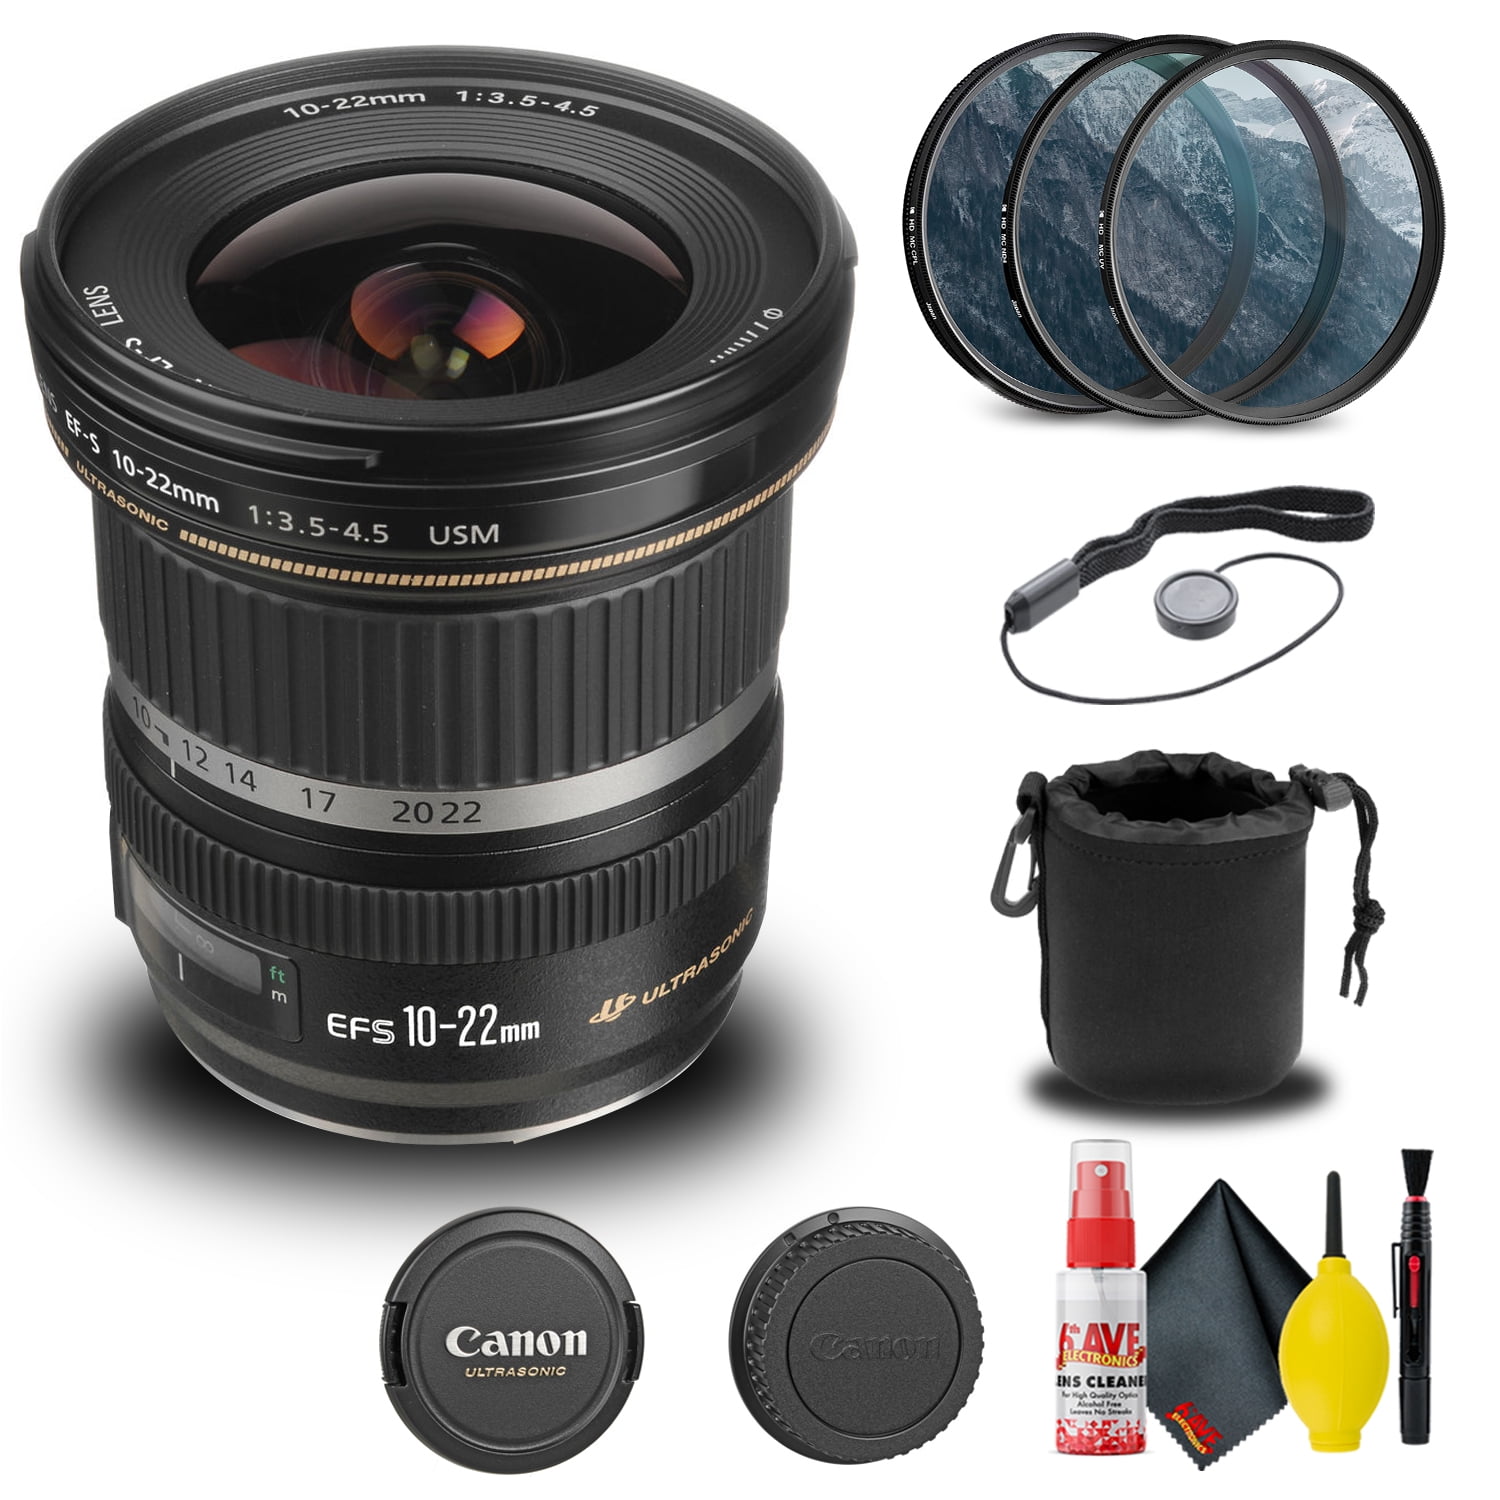 Canon EF-S 10-22mm f/3.5-4.5 USM Lens (9518A002) + Filter + Lens